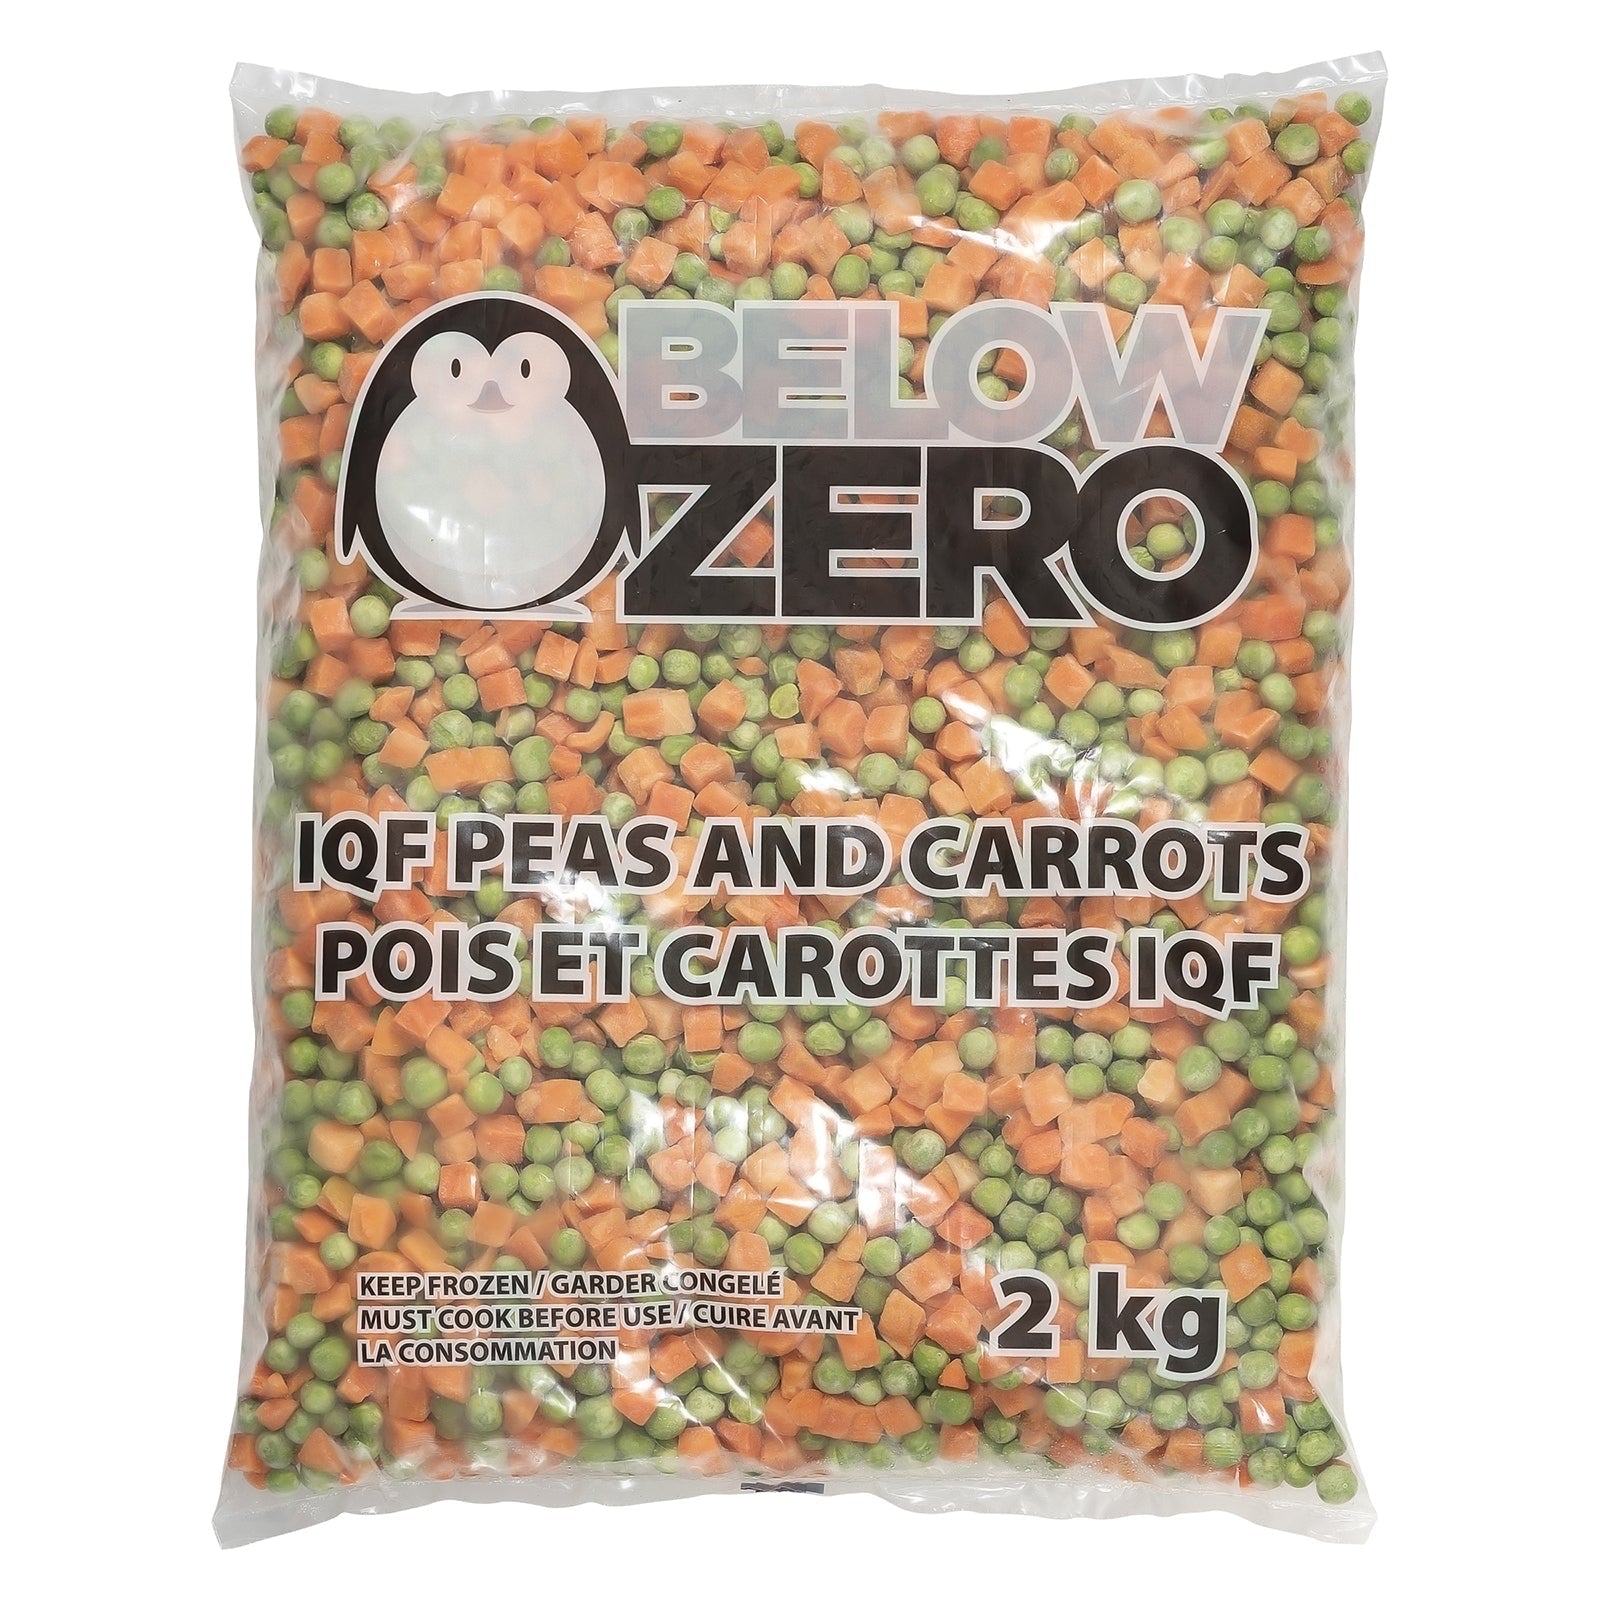 BELOW ZERO Peas and carrots